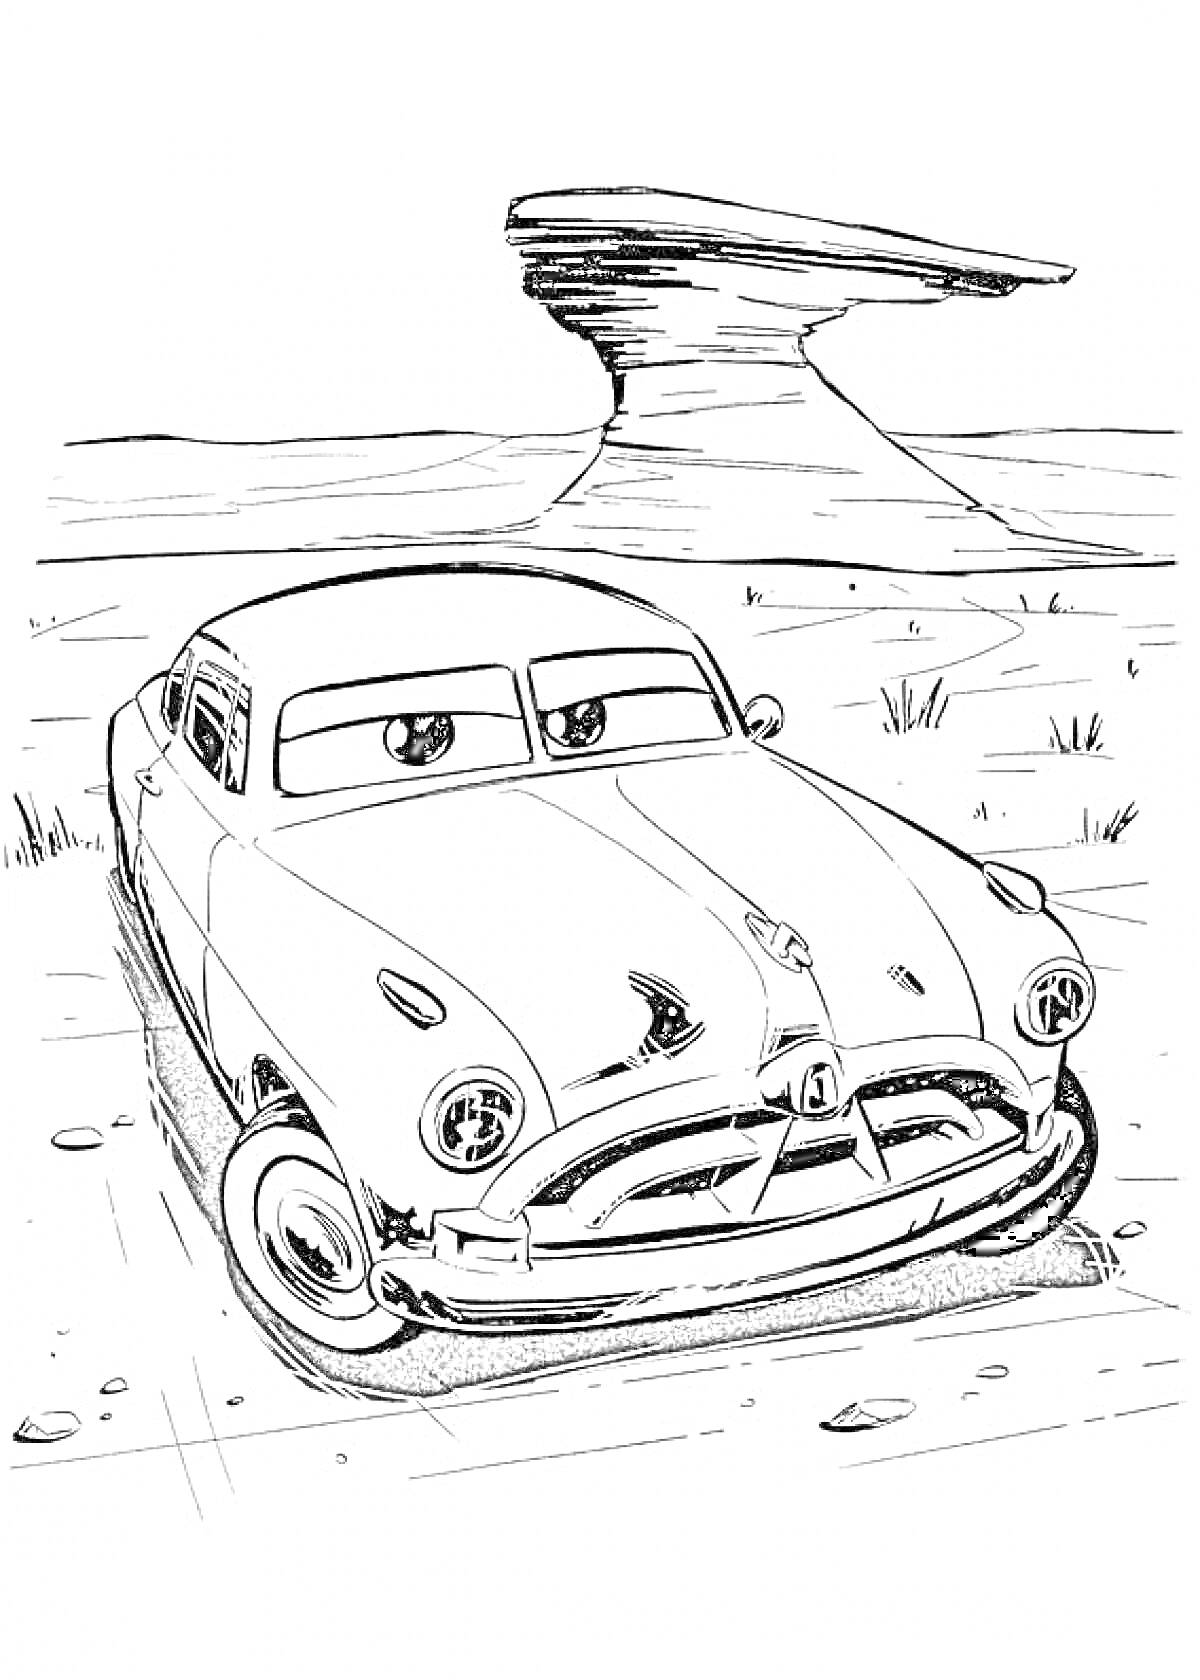 Машина с глазами на фоне пустынного пейзажа с необычной скалой